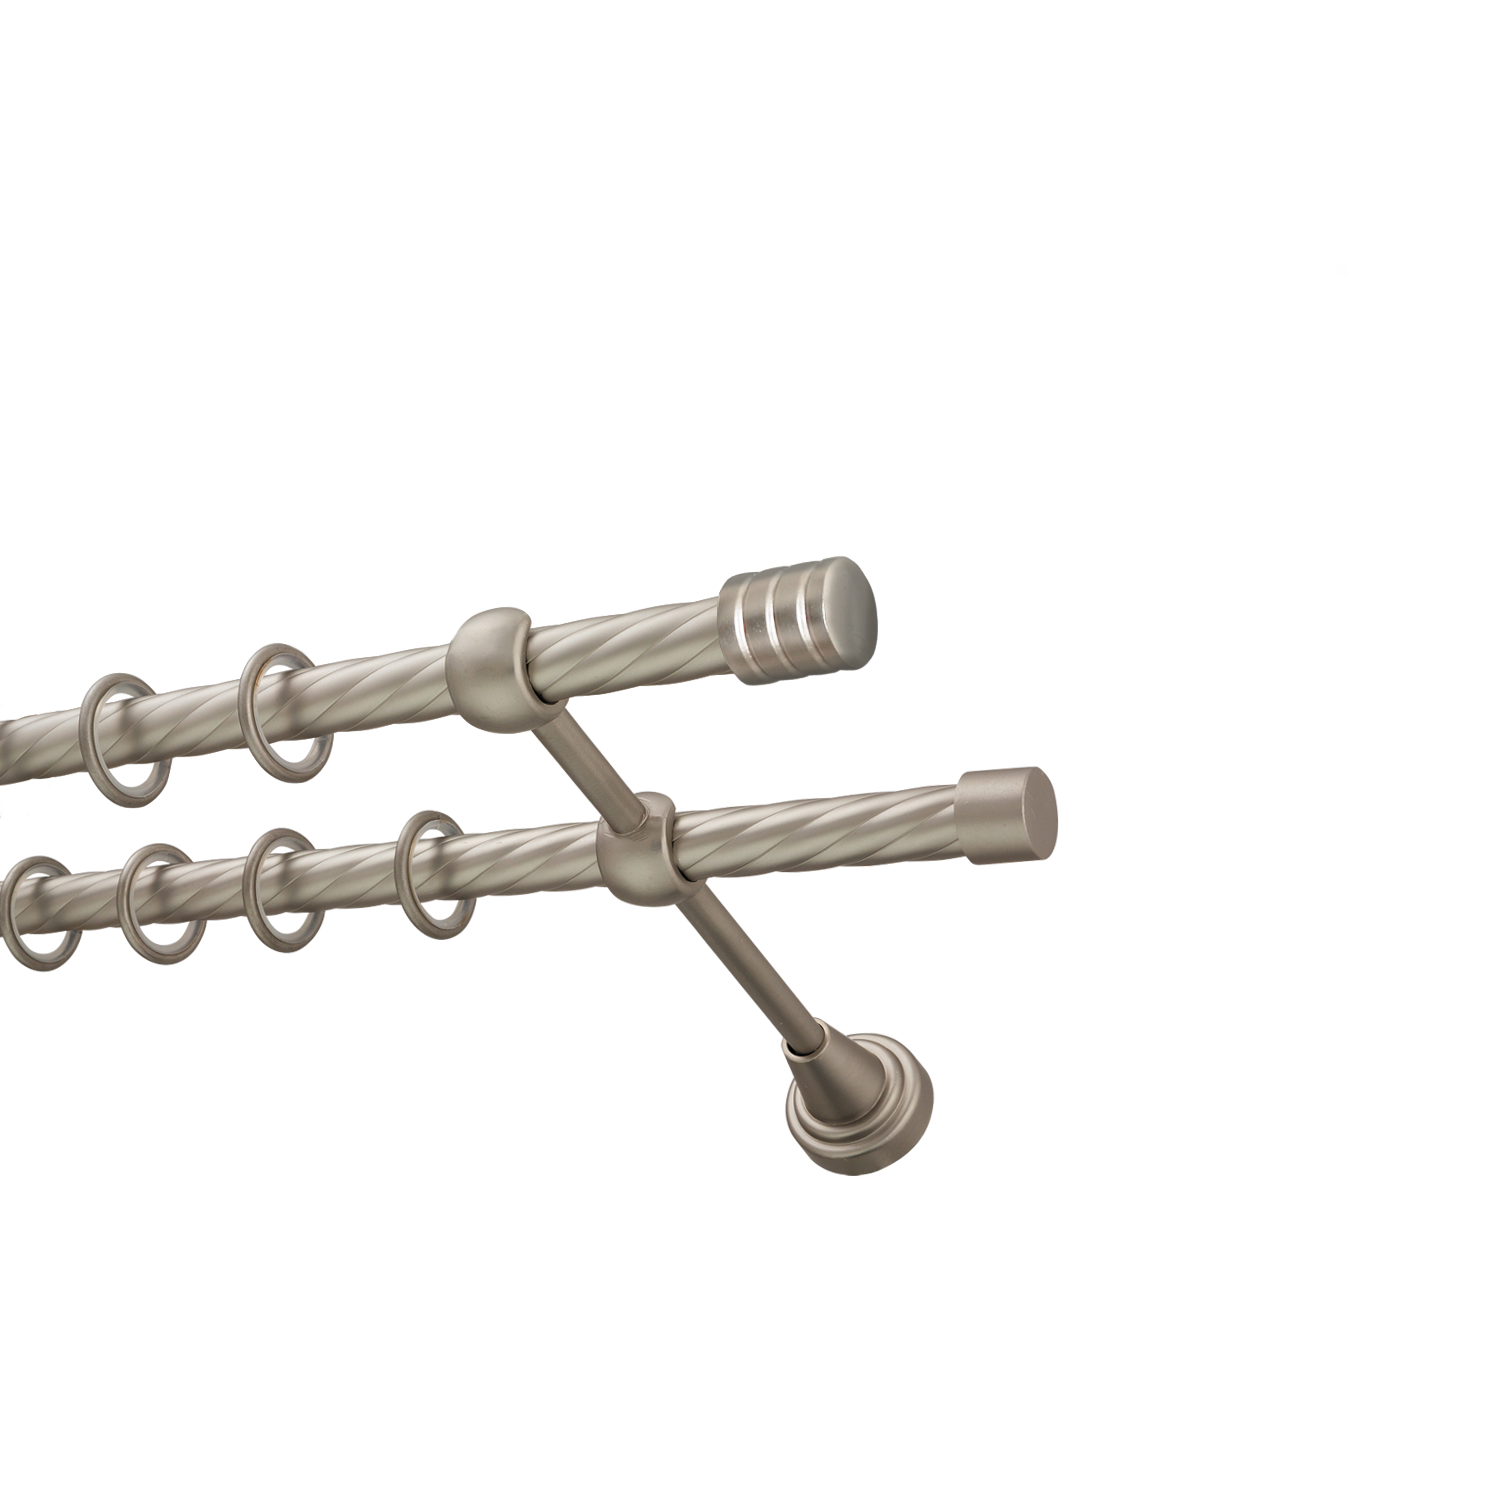 Металлический карниз для штор Подиум, двухрядный 16/16 мм, сталь, витая штанга, длина 200 см - фото Wikidecor.ru